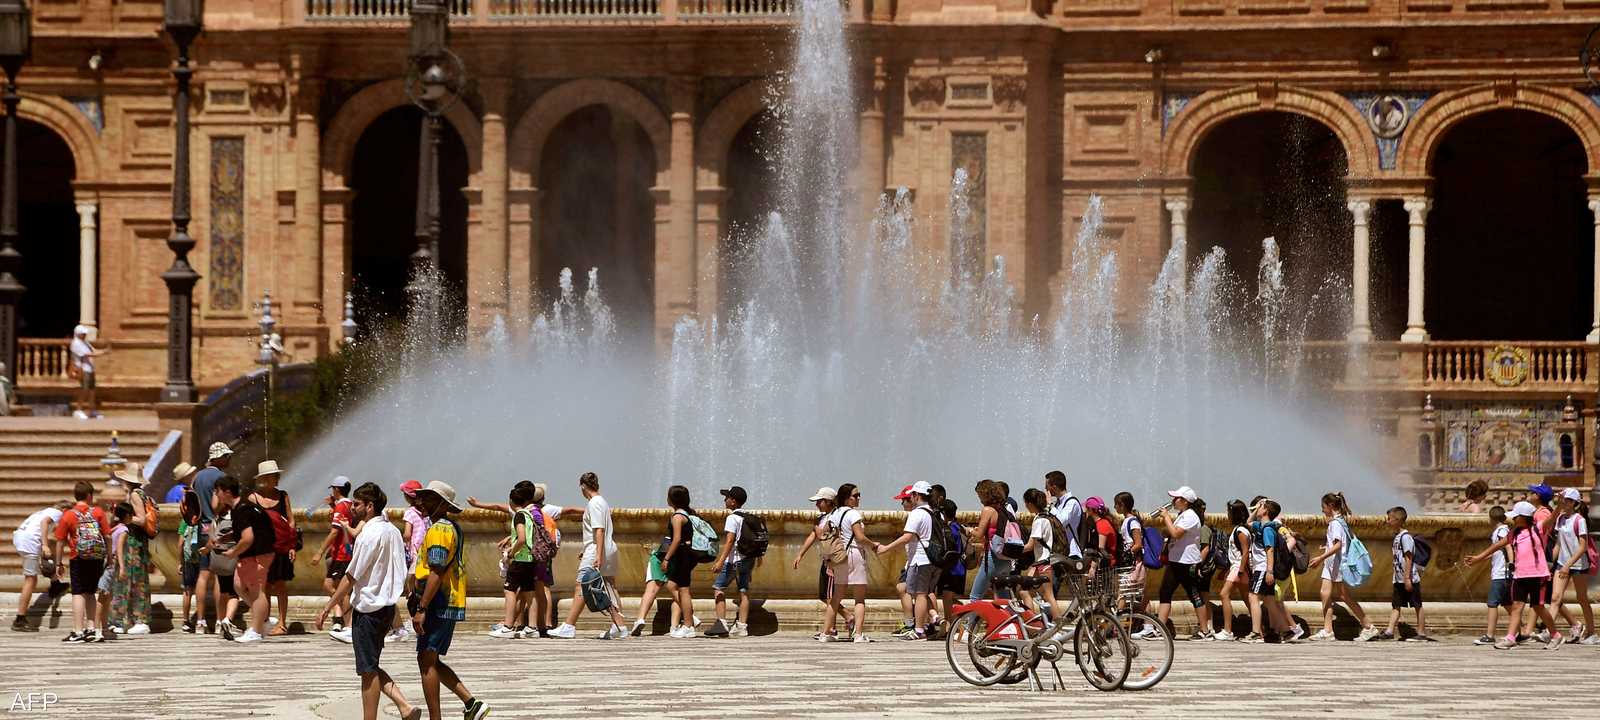 إسبانيا من أكثر دول أوروبا التي تعاني من آثار تغير المناخ